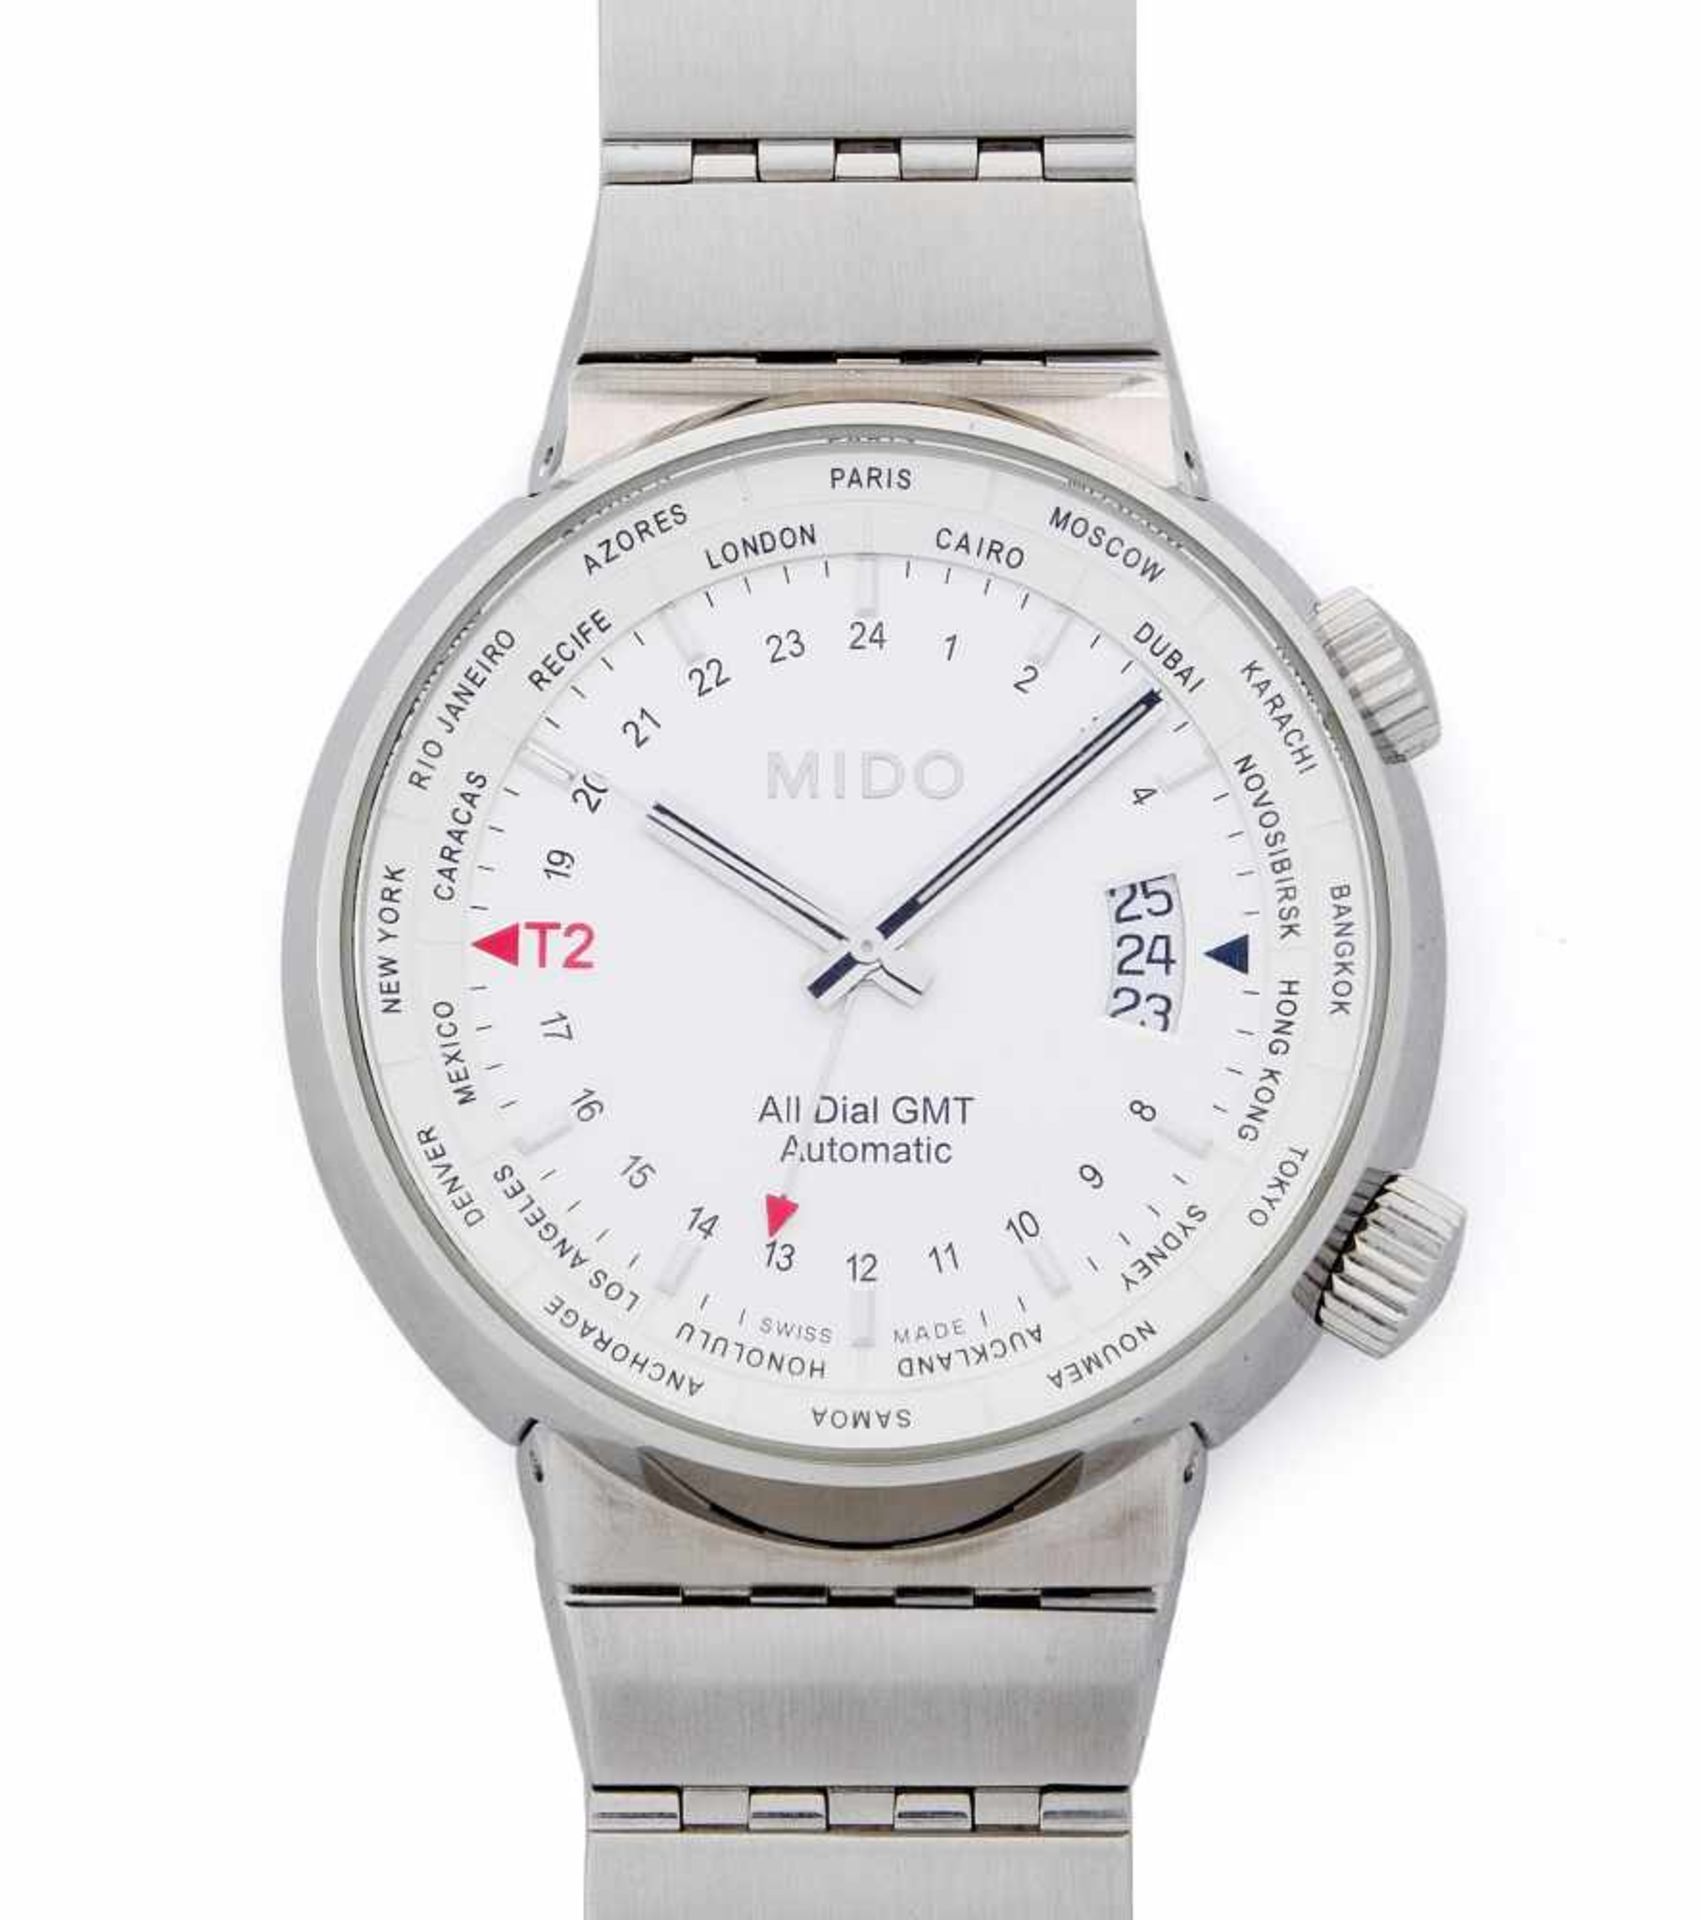 Mido GMTRunde, automatische Armbanduhr um 2000 in Stahlgehäuse. Boden verschraubt mit Sichtglas